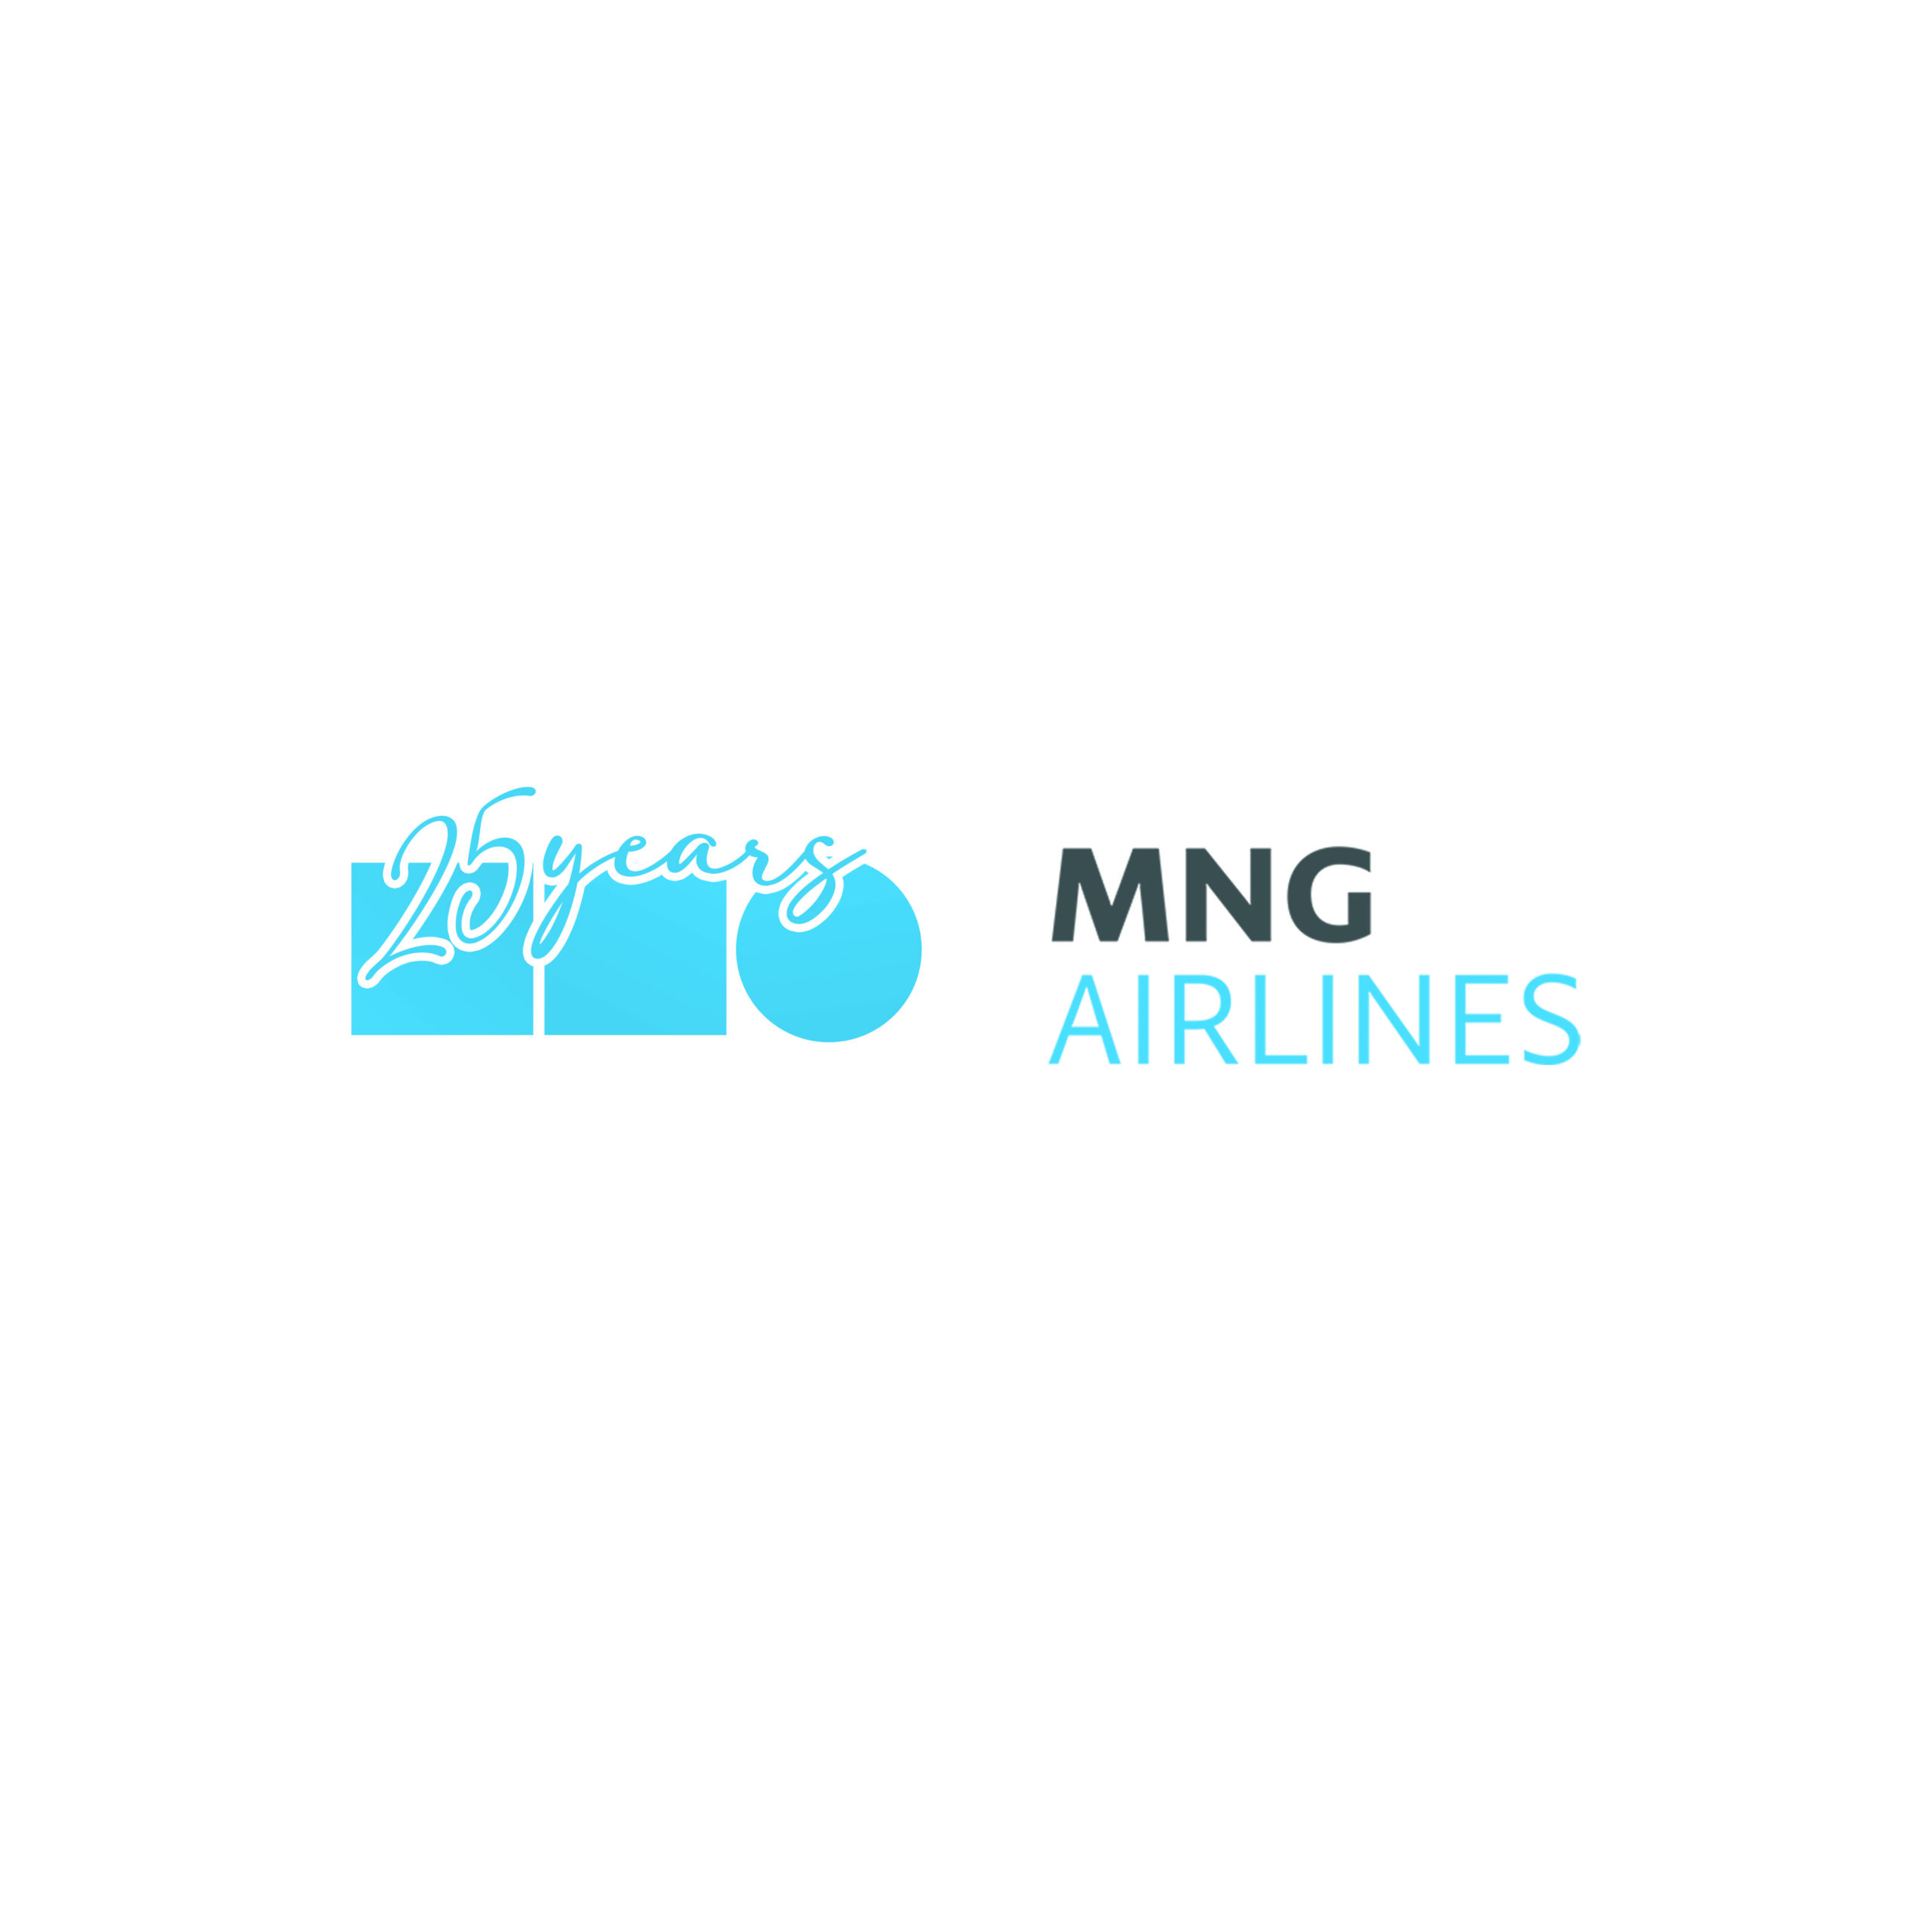 Türkiye’nin ilk özel hava kargo taşıyıcısı MNG Havayolları, 25 Yaşında!